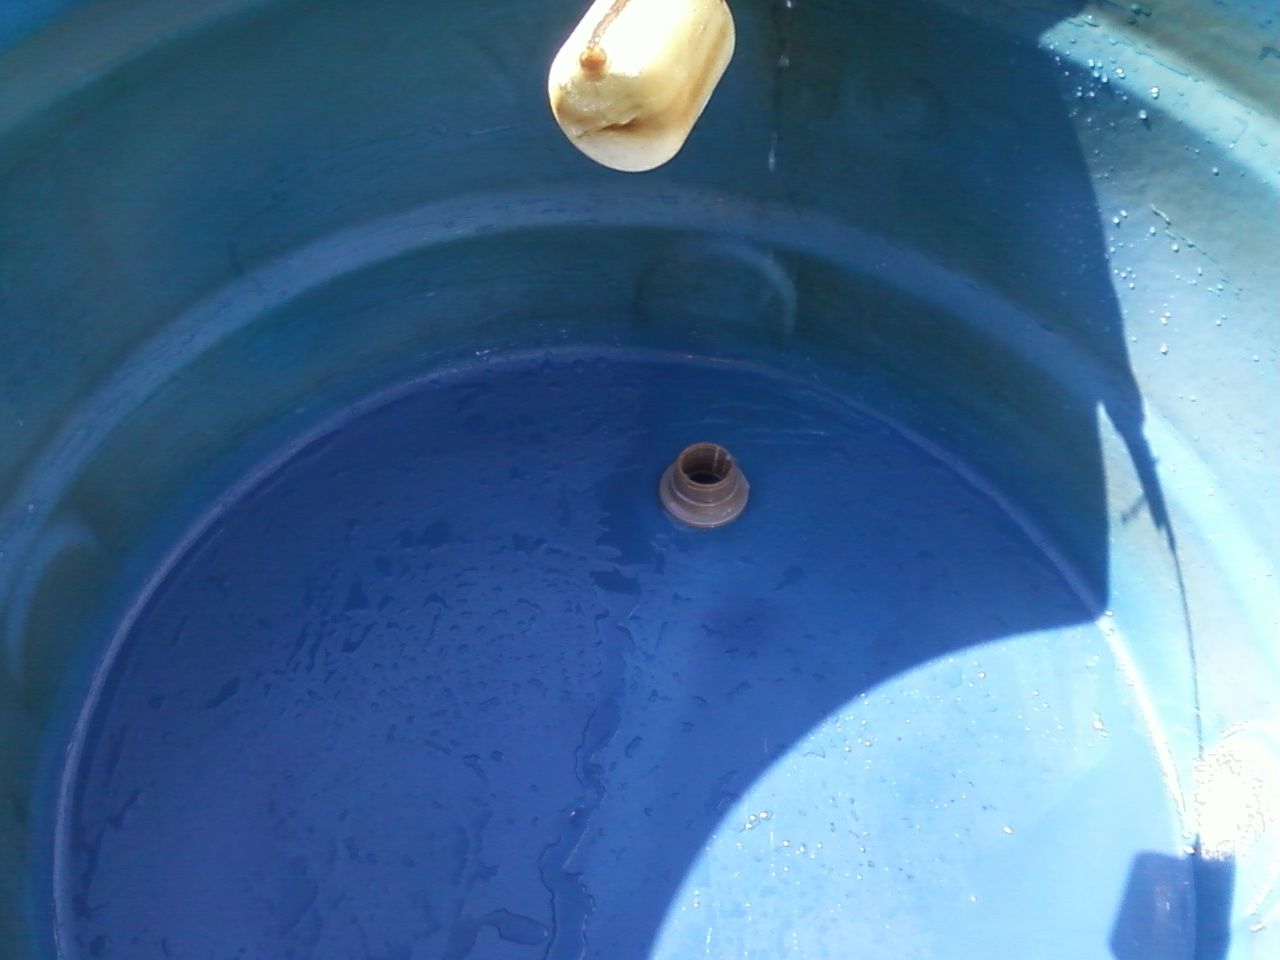 Reparo de Caixa de água Preço Cidade Jardim - Empresa de Manutenção de Caixa de água